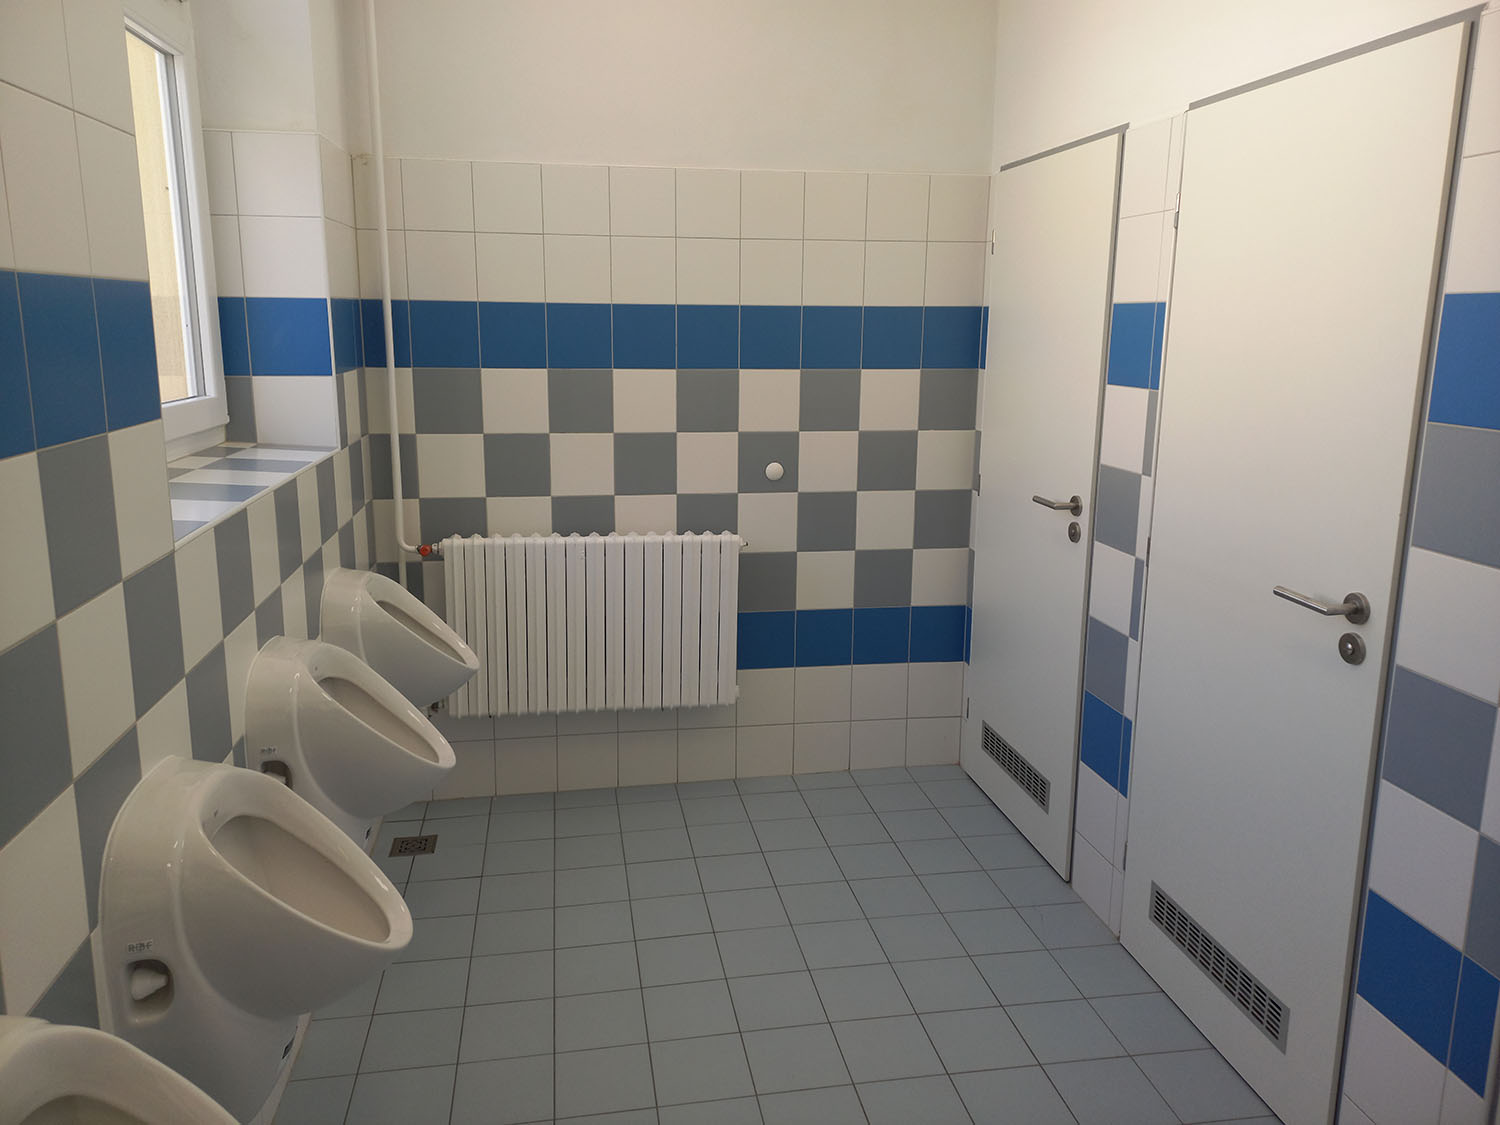 Hledáte perfektní obkladače pro vaši koupelnu, WC nebo jinou místnost?